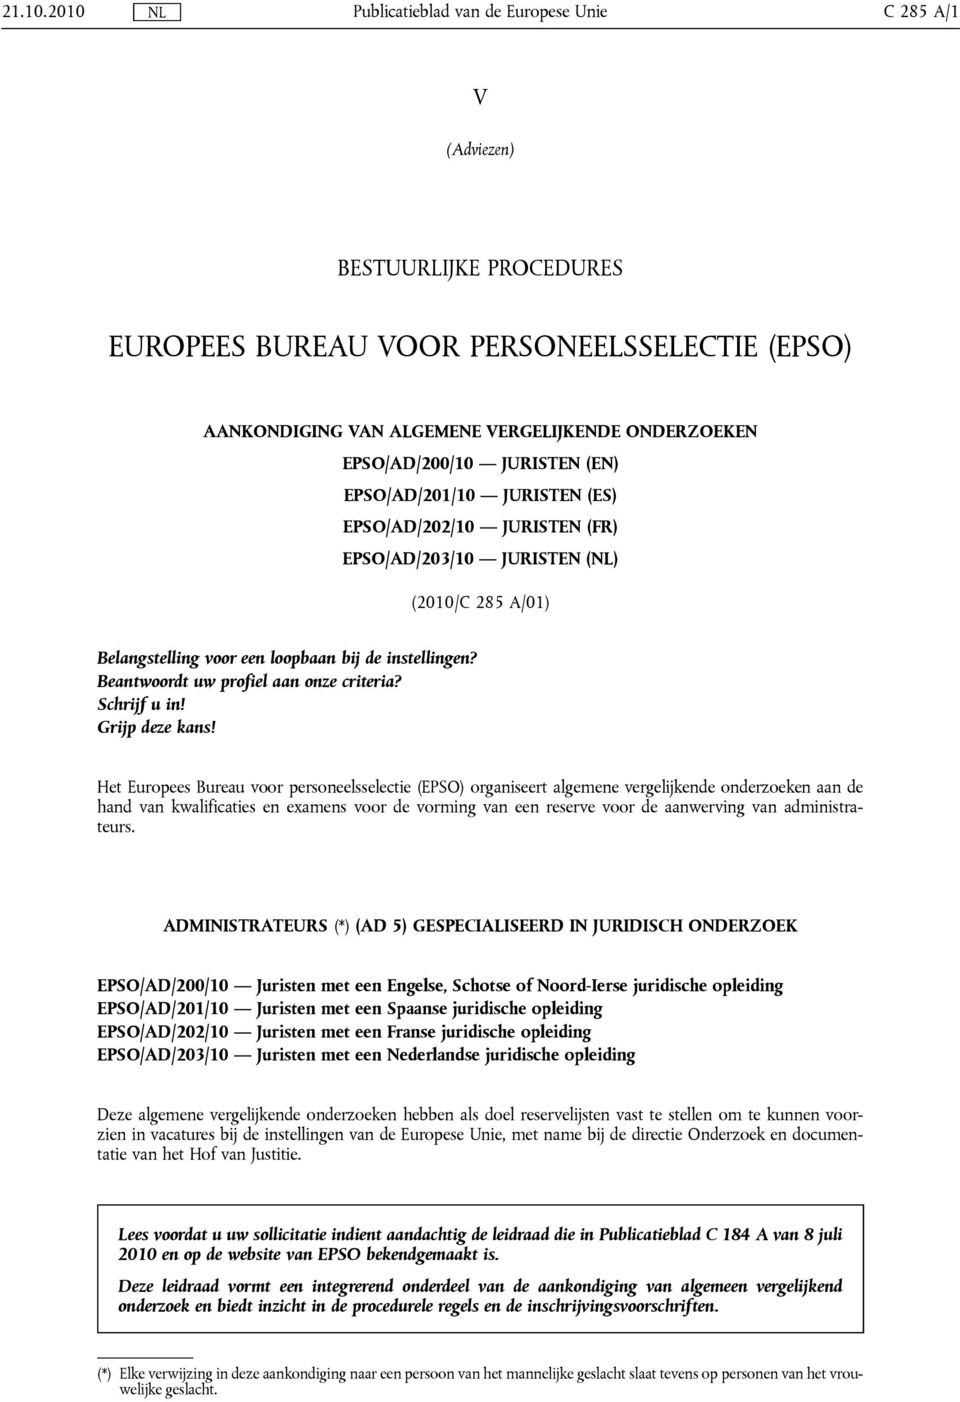 EPSO/AD/200/10 JURISTEN (EN) EPSO/AD/201/10 JURISTEN (ES) EPSO/AD/202/10 JURISTEN (FR) EPSO/AD/203/10 JURISTEN (NL) (2010/C 285 A/01) Belangstelling voor e loopbaan bij de instelling?